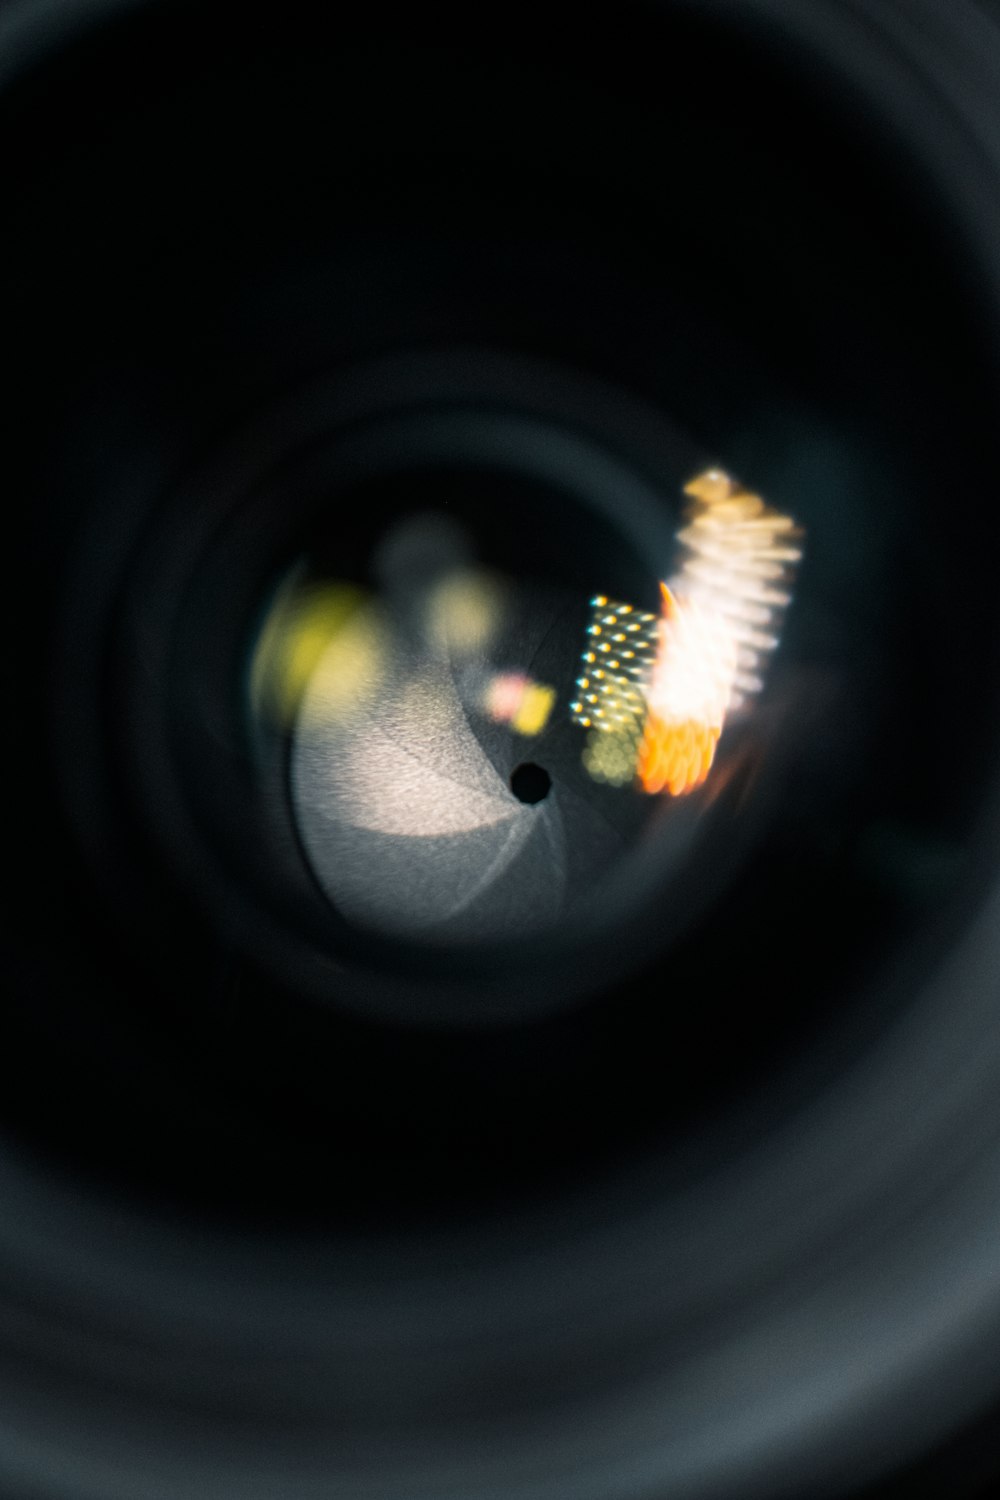 Una vista ravvicinata dell'obiettivo di una fotocamera